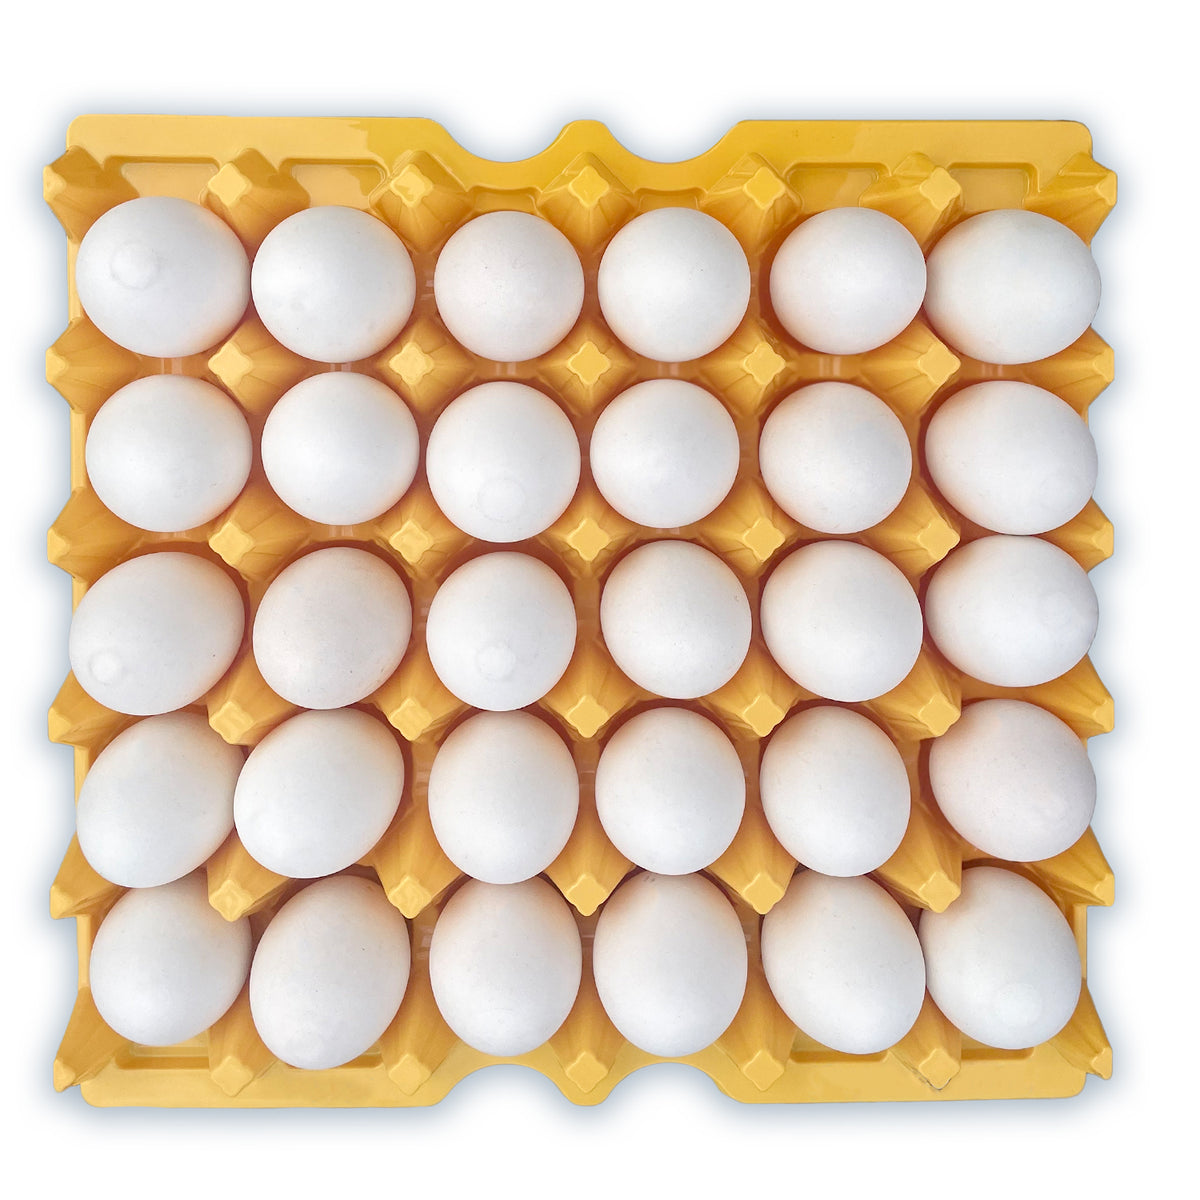 Plastic egg tray - Egg Trays - GI-OVO B.V.